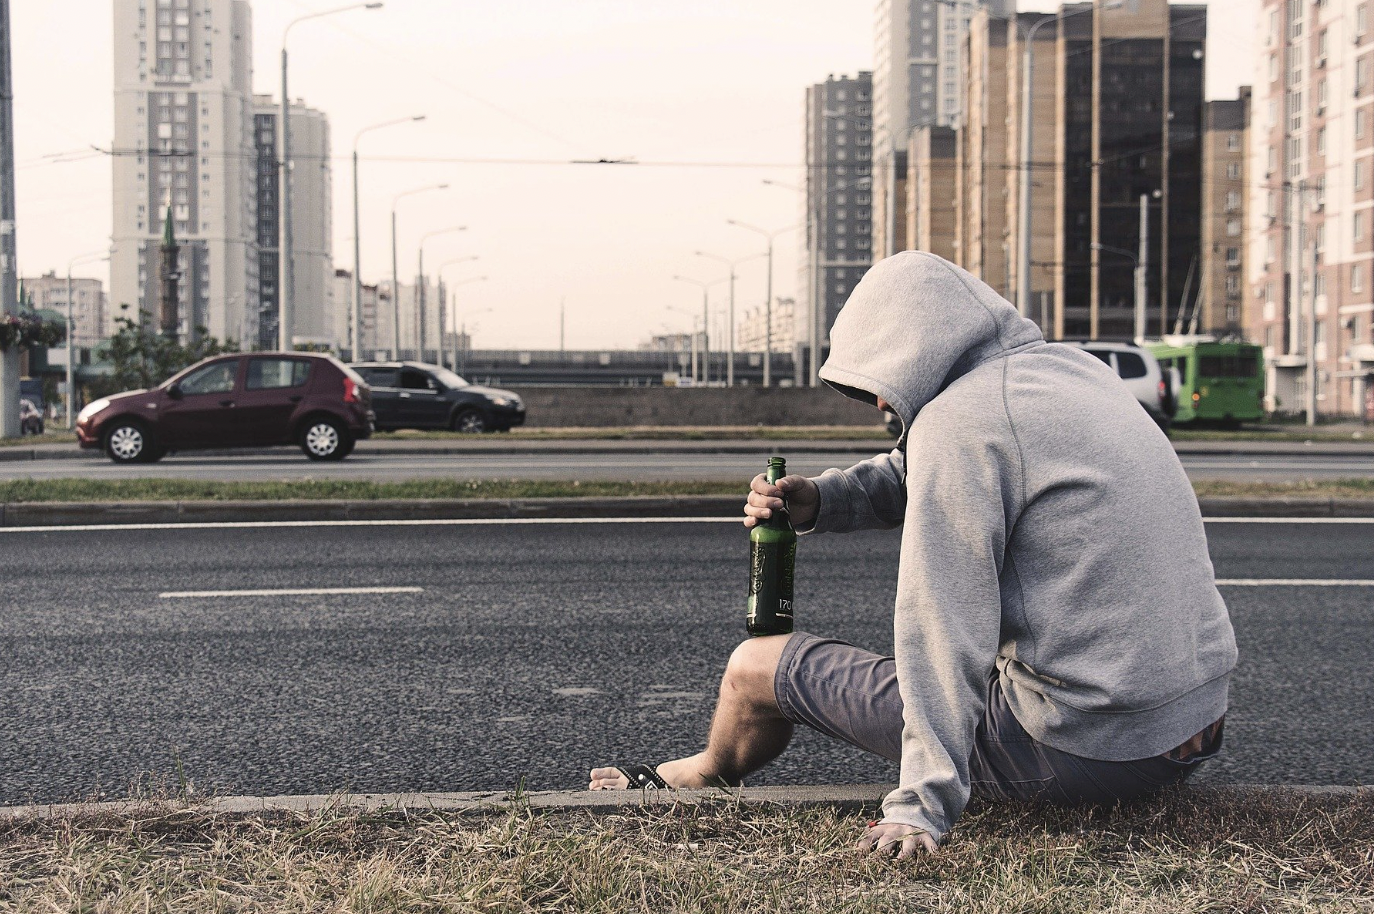 Mann mit Kapuze über Kopf sitzt mit Bierflasche am Straßenrand